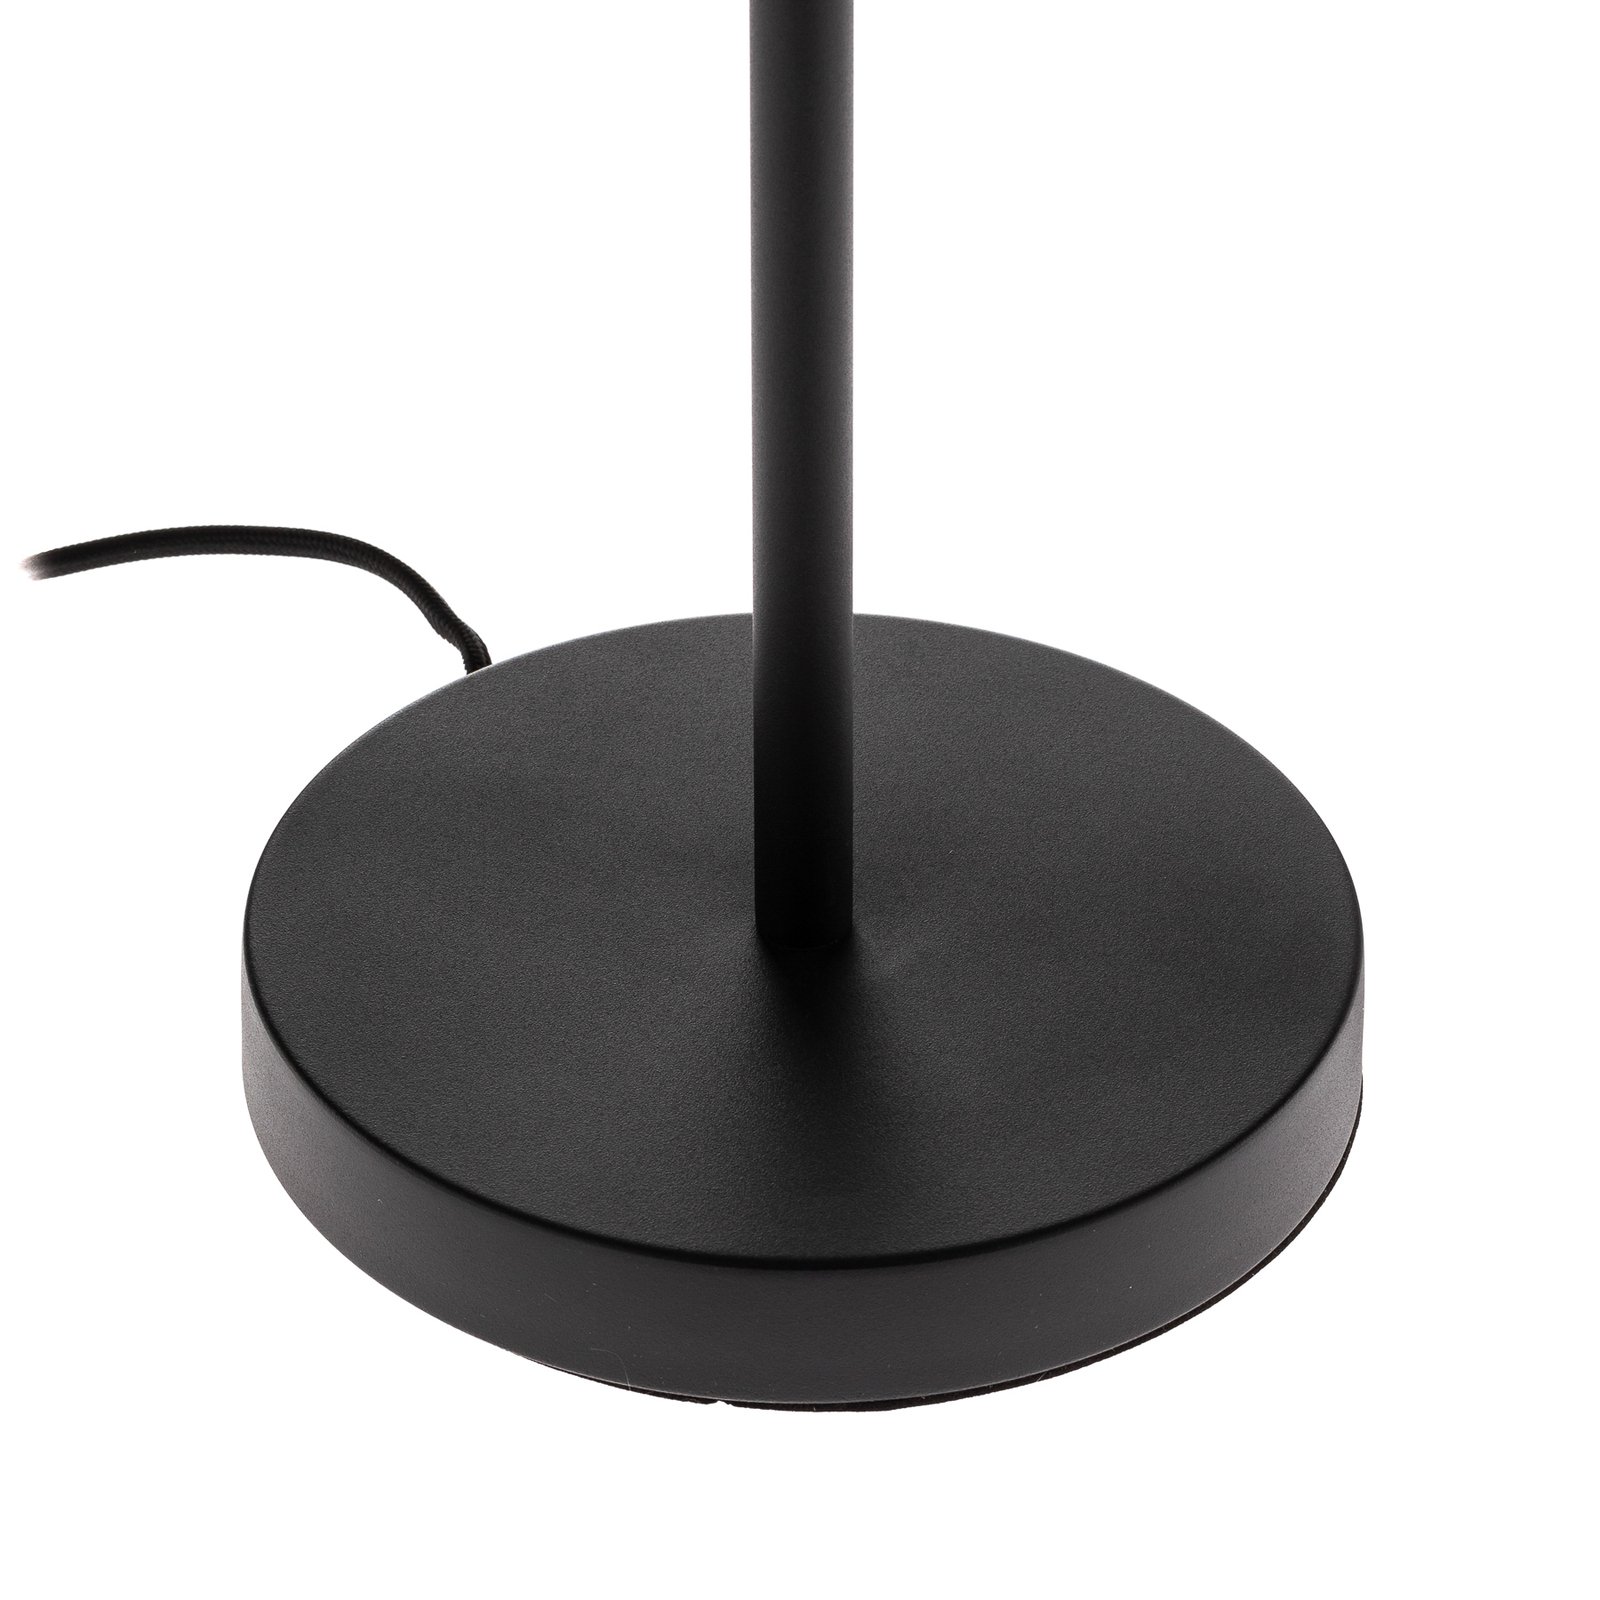 Lucande Sotiana table lamp, Glaskugel, black